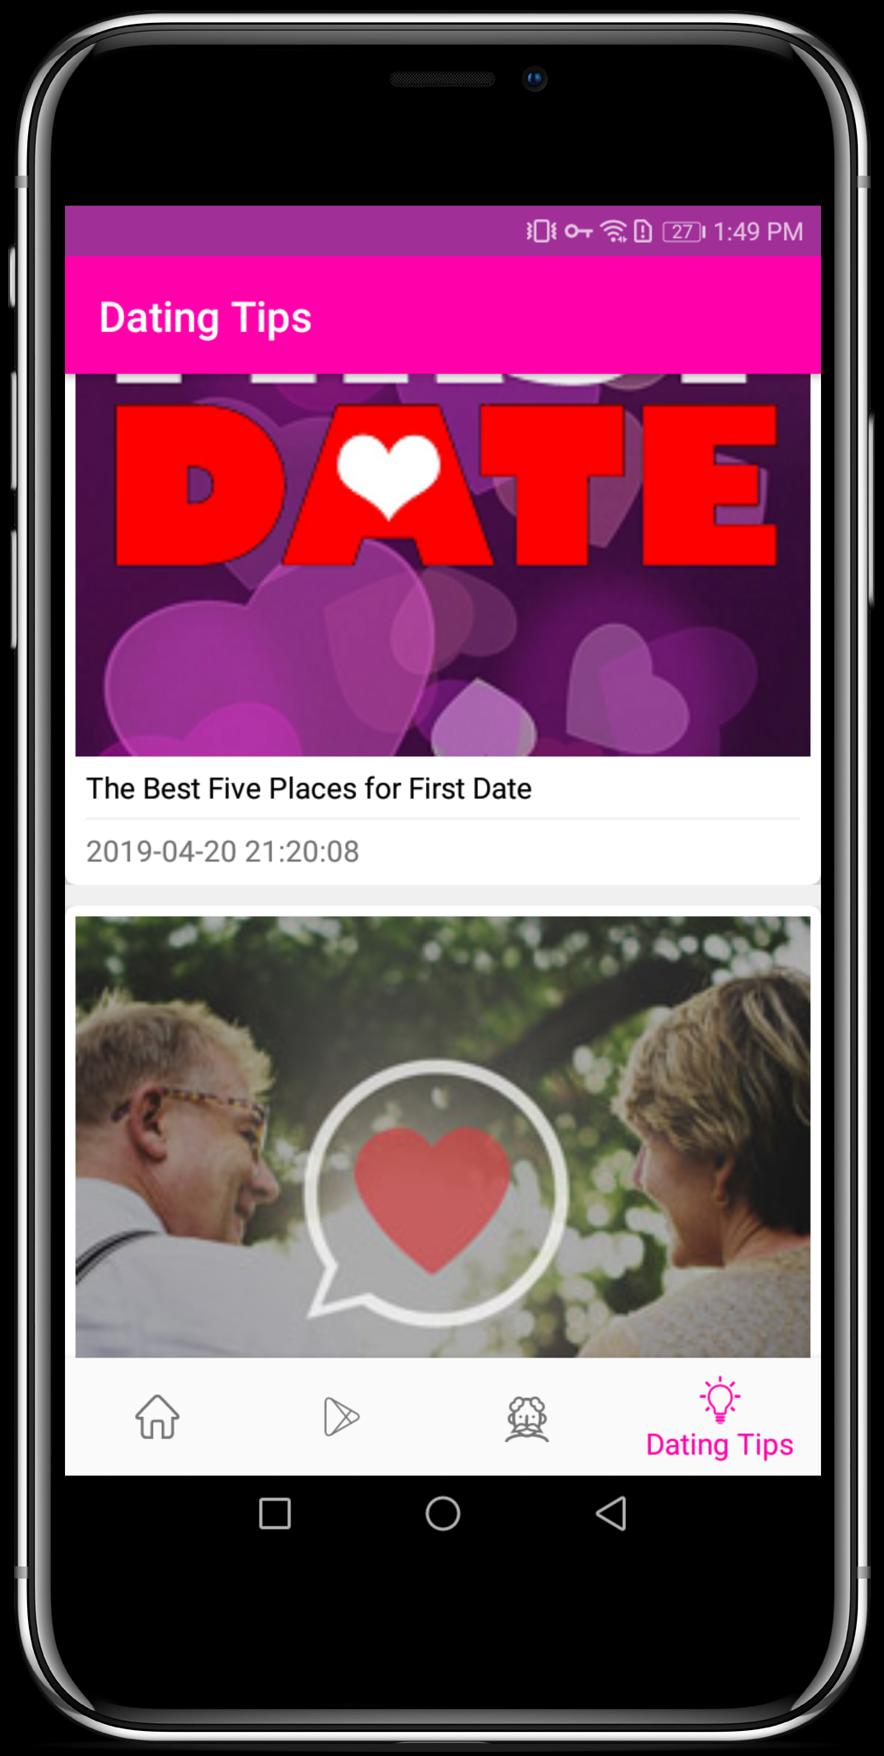 Tinder for Seniors - Senior Dating App for Singles Over 60